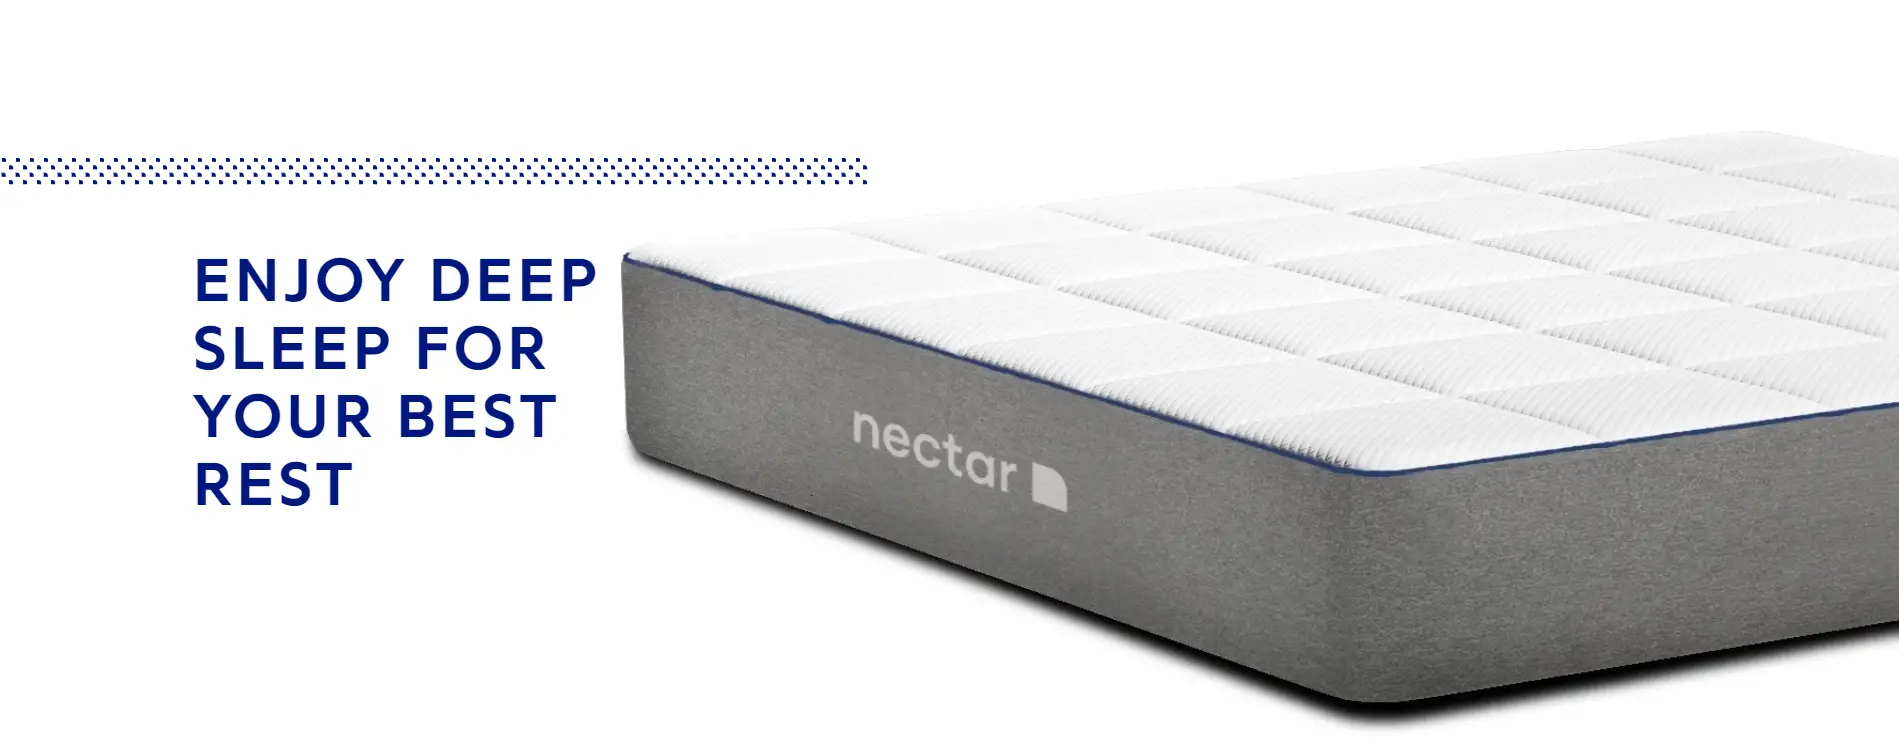 Amazon.com: Nectar Sleep: Nectar Sleep